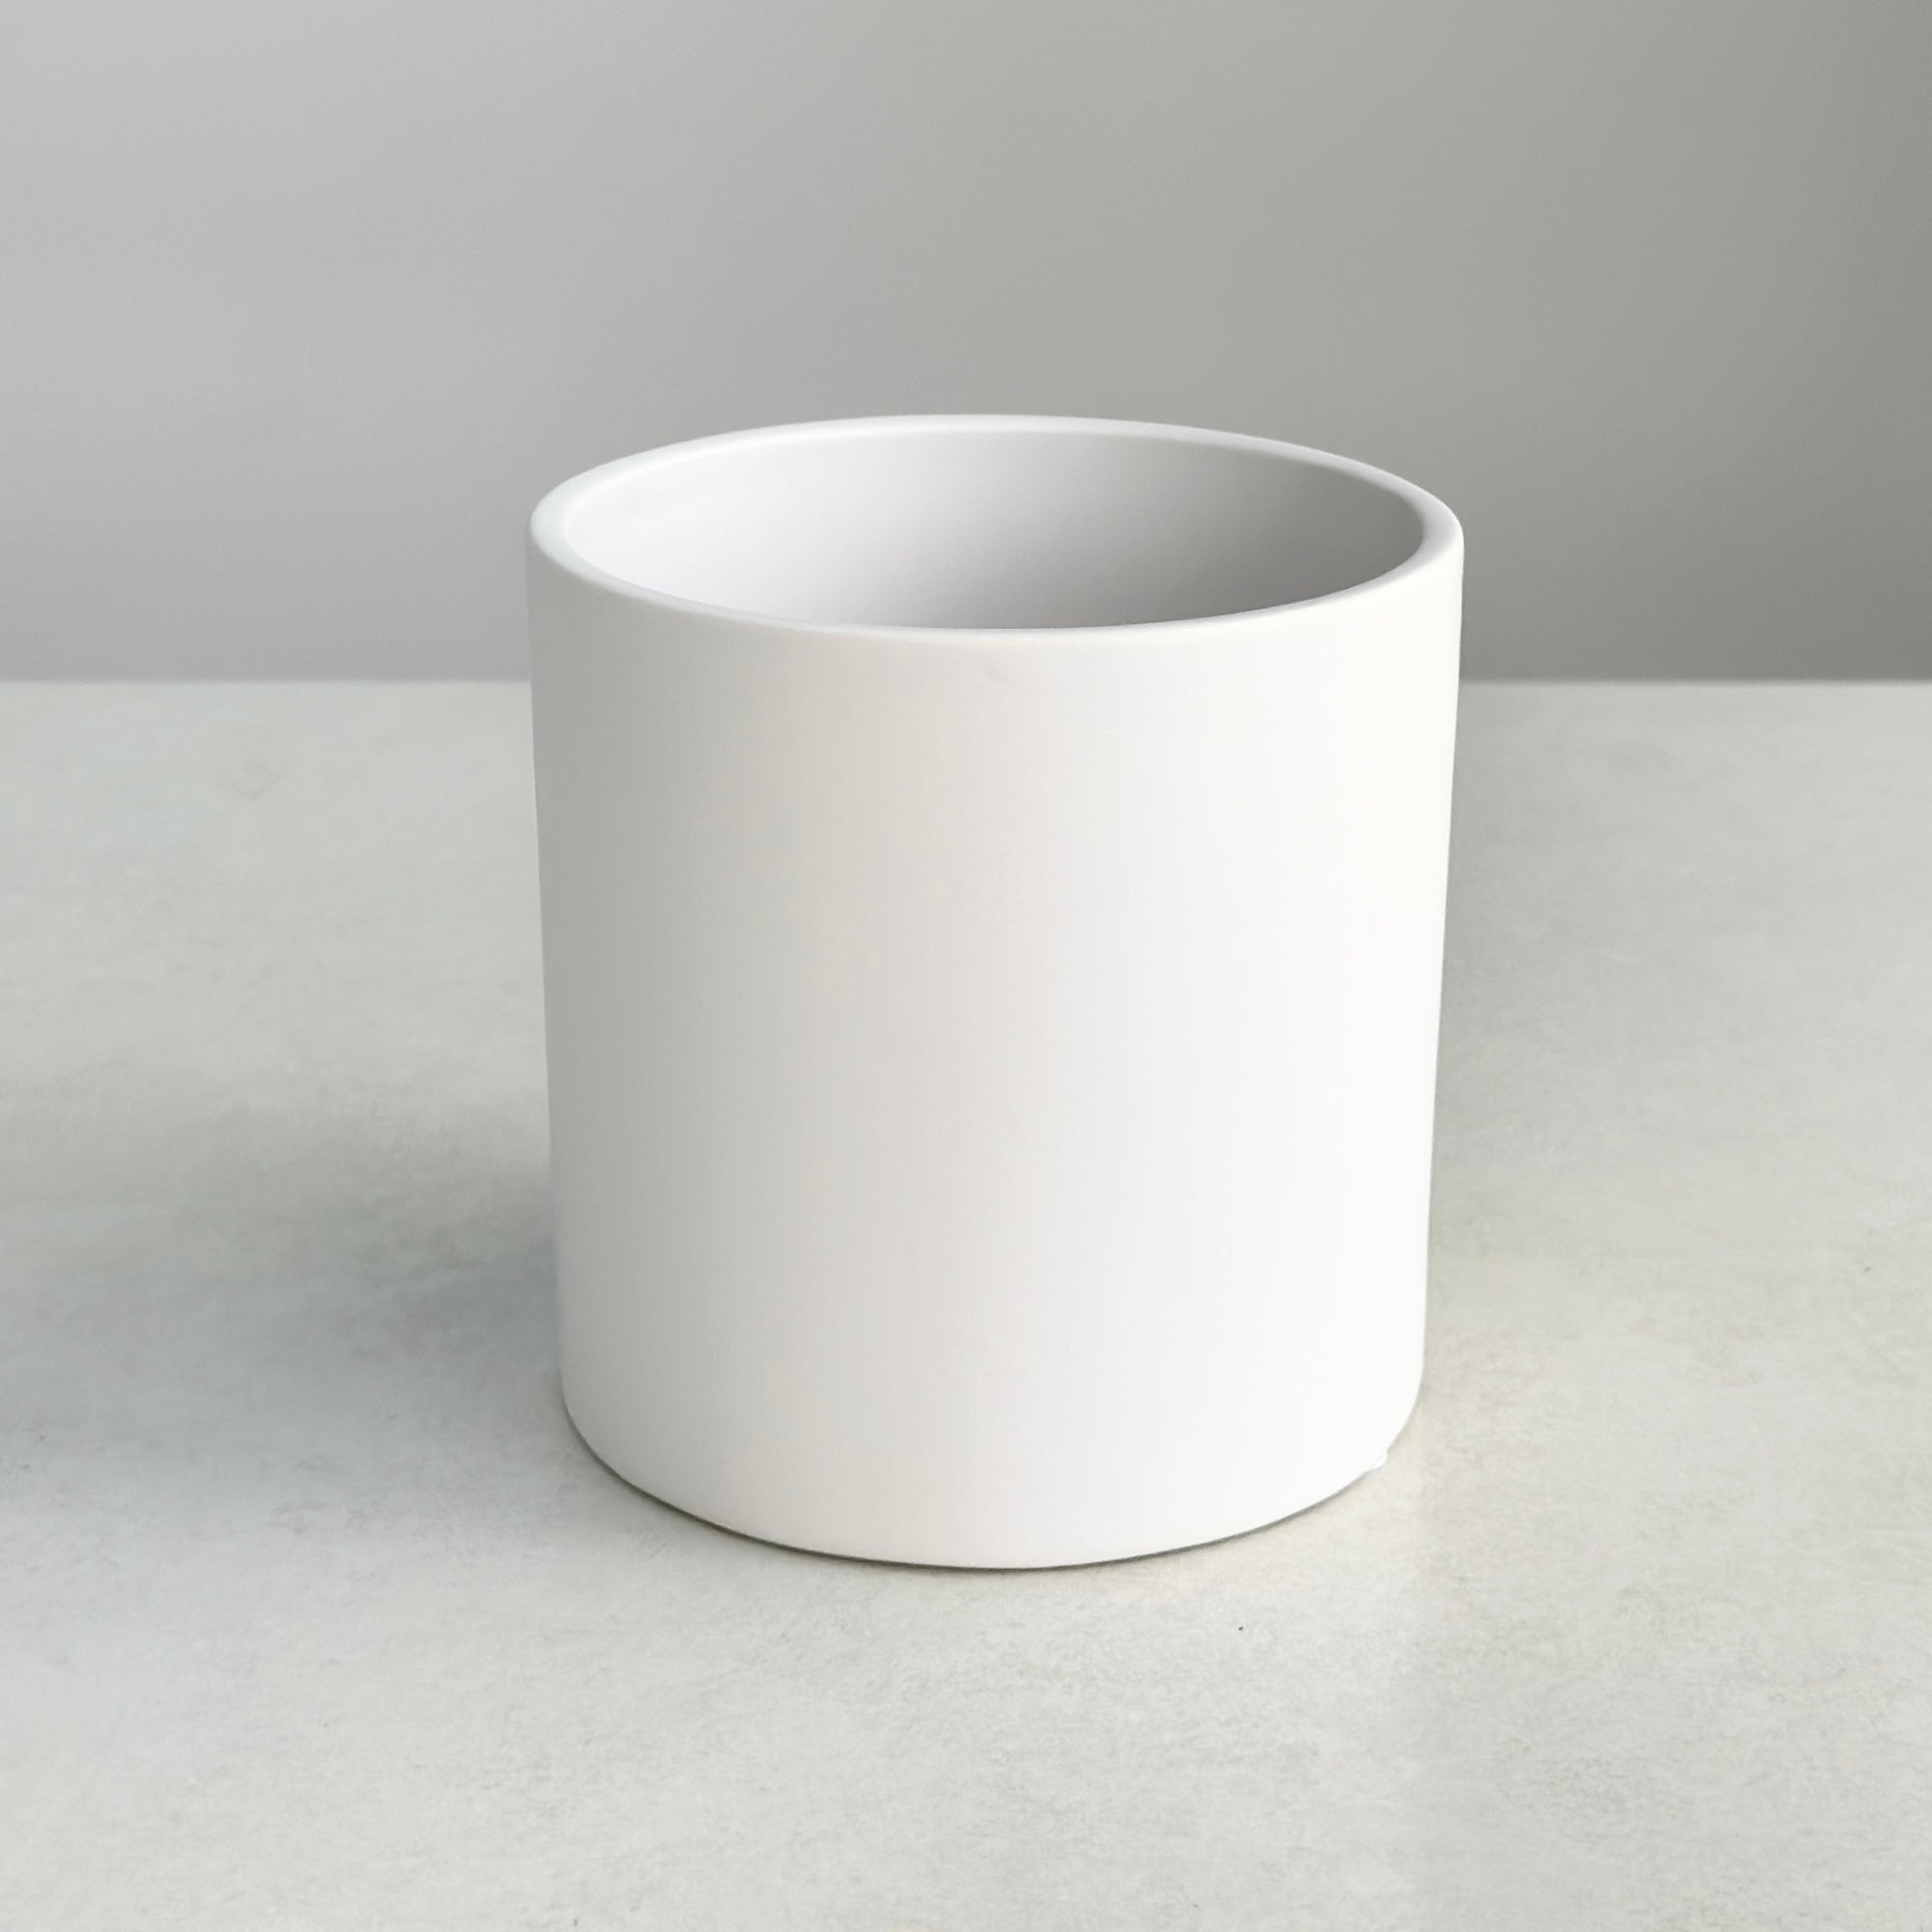 Ceramic Round White Pot Matte Finish